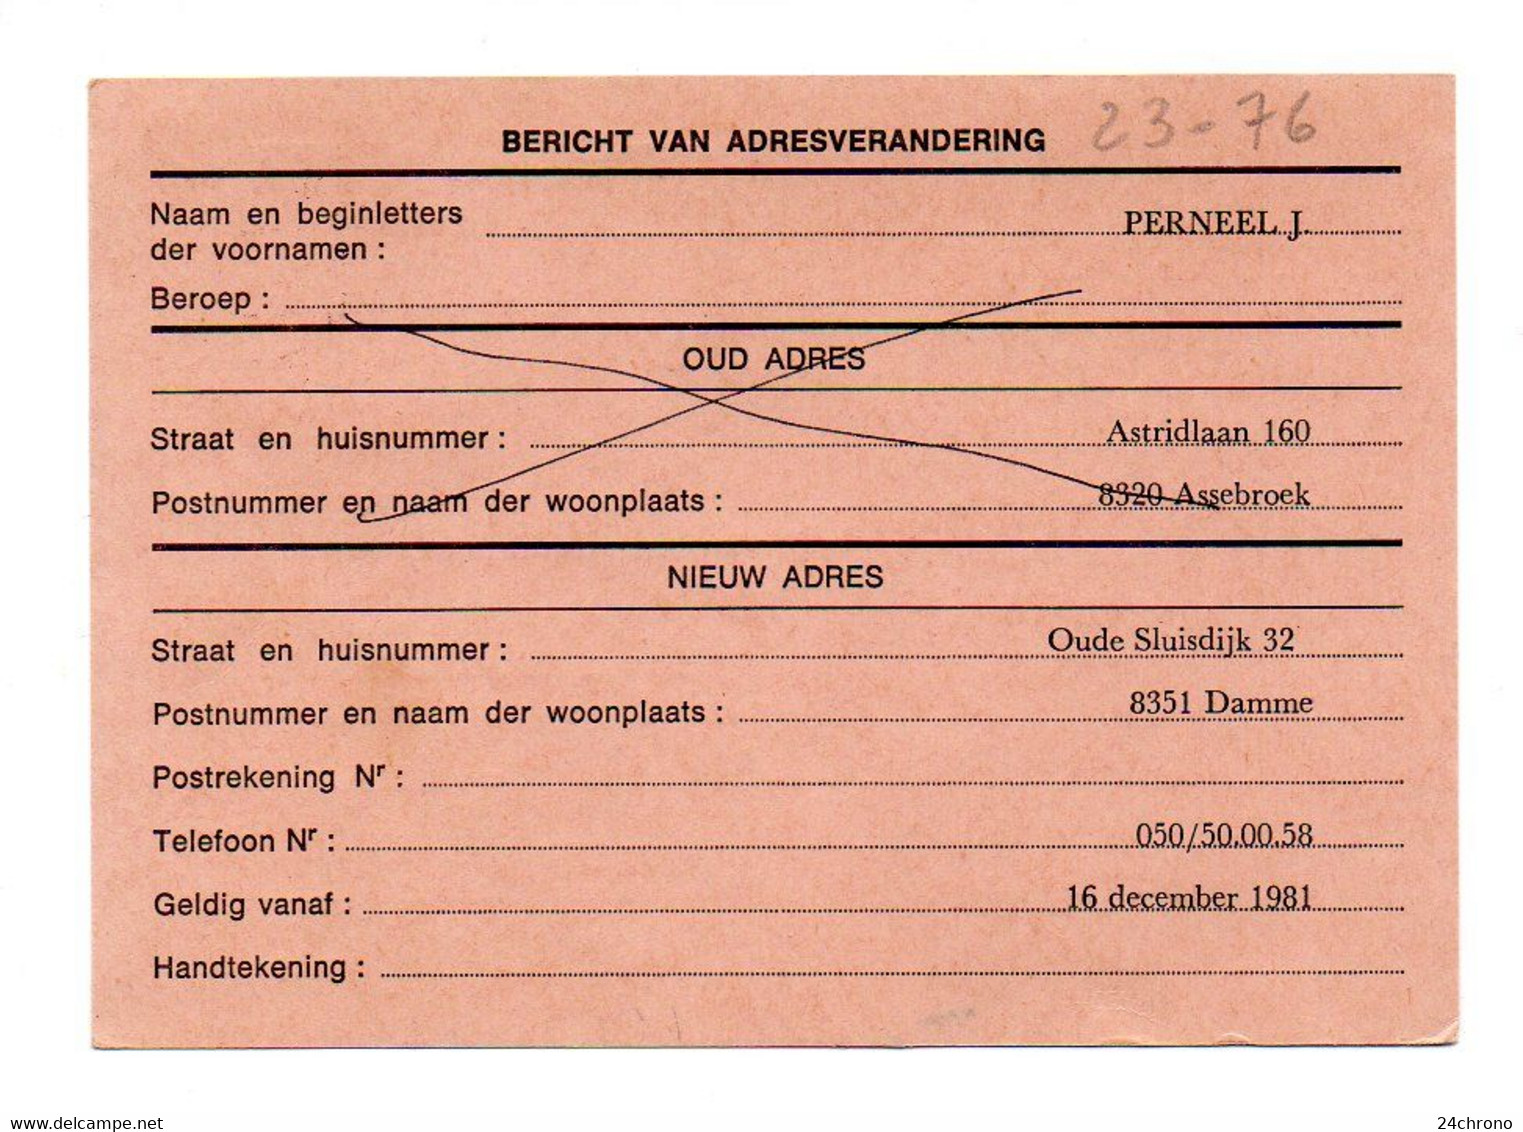 Belgique: Carte Postale, Bericht Van Adresverandering, Entier Postal De 6 F + Timbre 1 F, 1981 (23-76) - Adressenänderungen